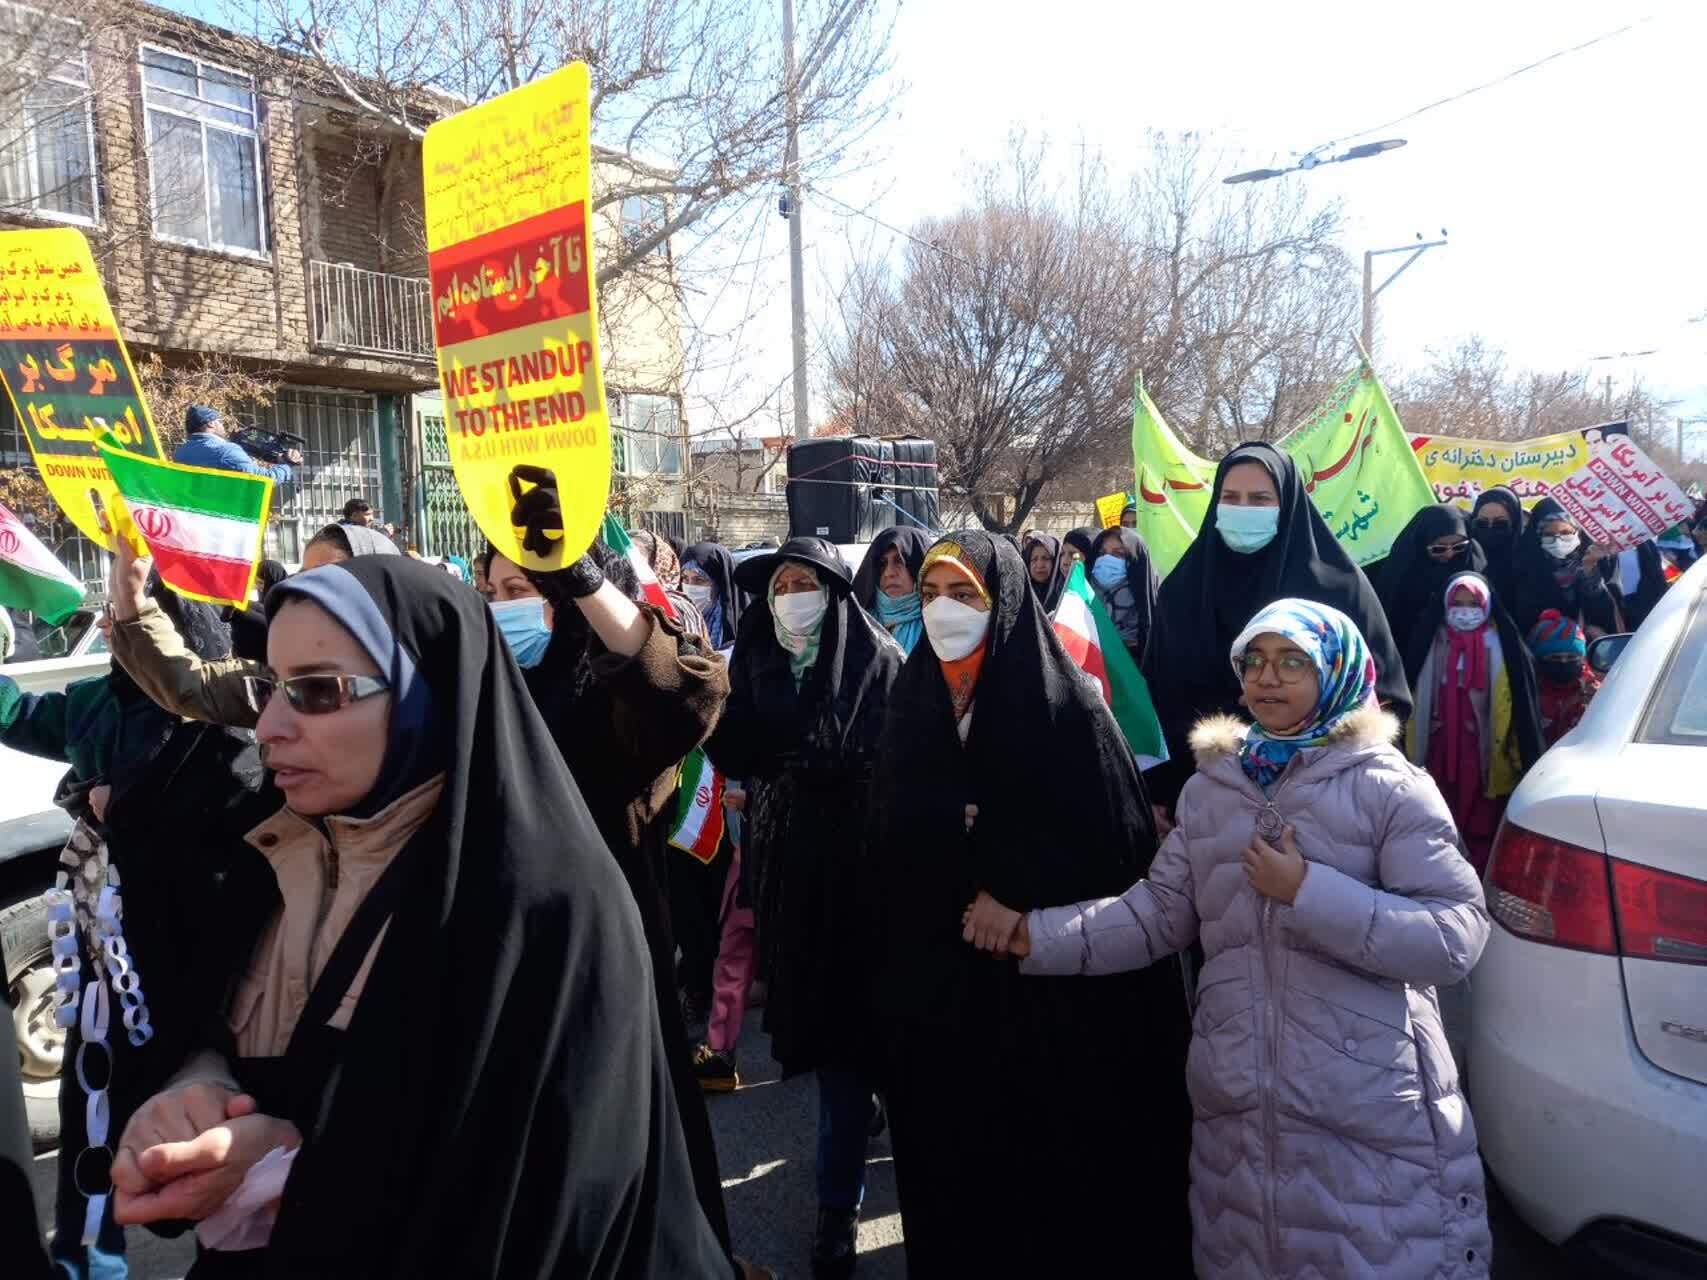 نمایش شکوه پیروزی در استان مرکزی/ همه آمده اند